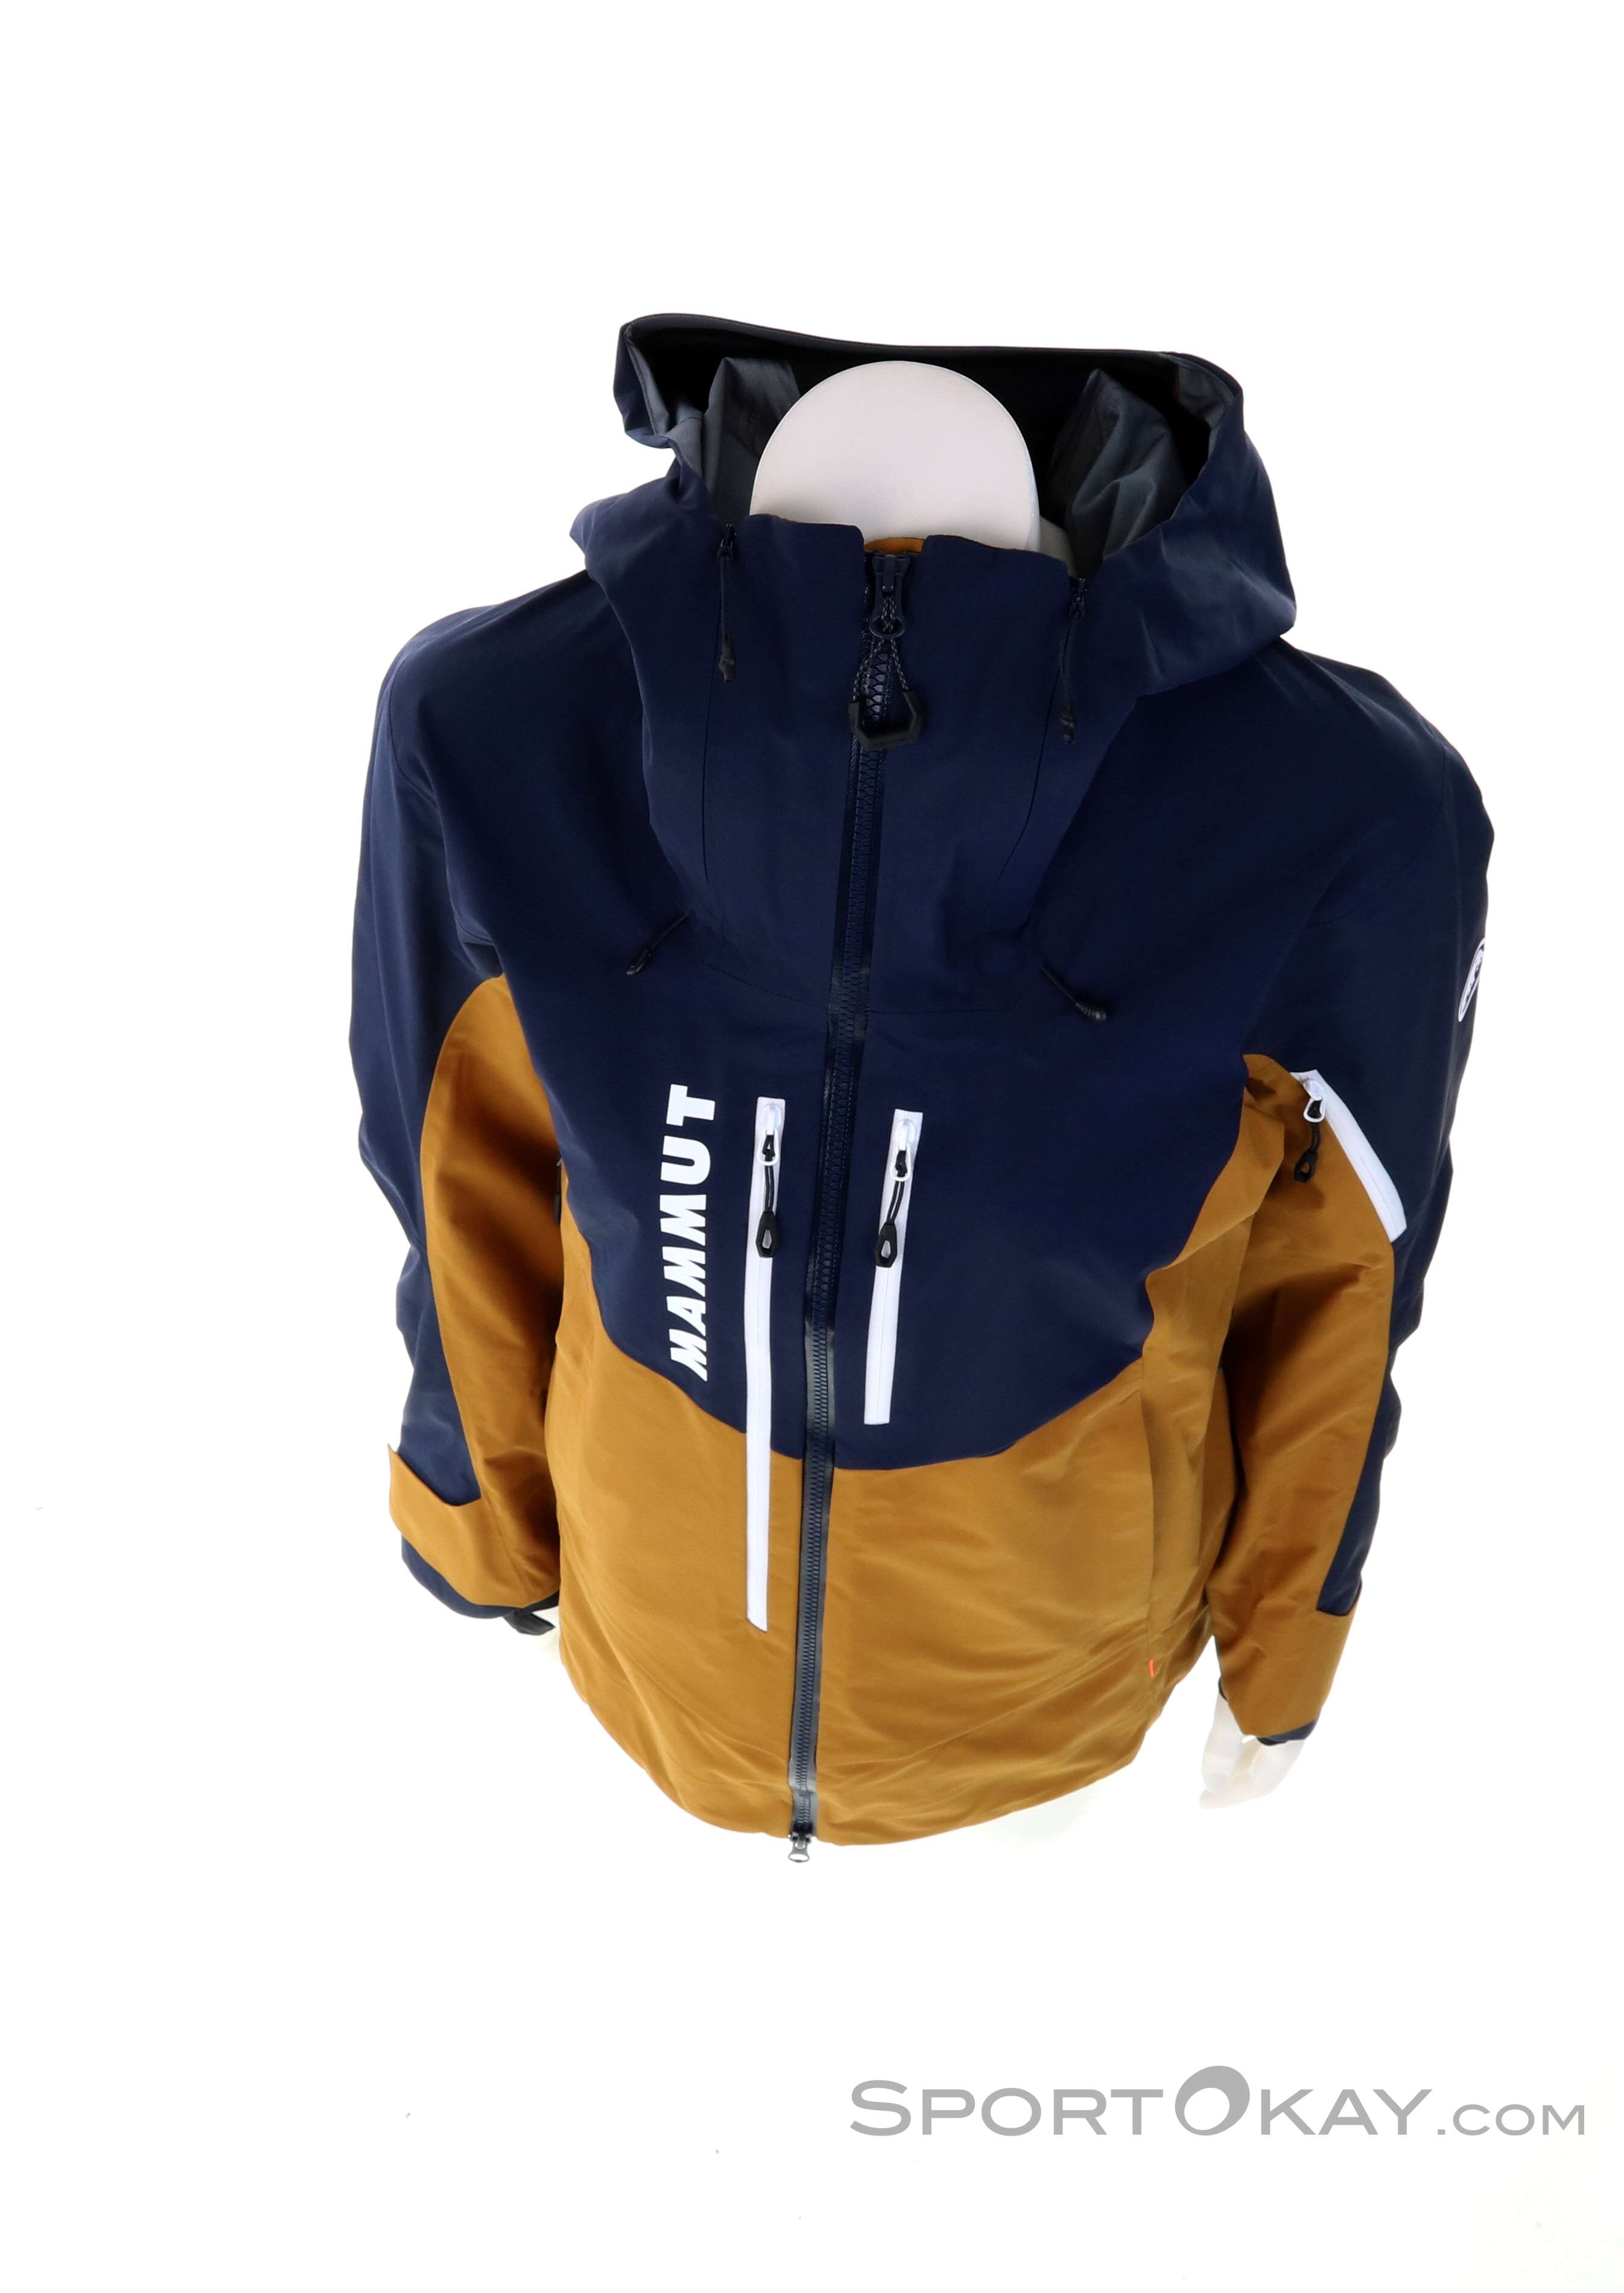 Mammut La Liste Pro Hardshell Hooded Jacket - Skijacke Damen online kaufen